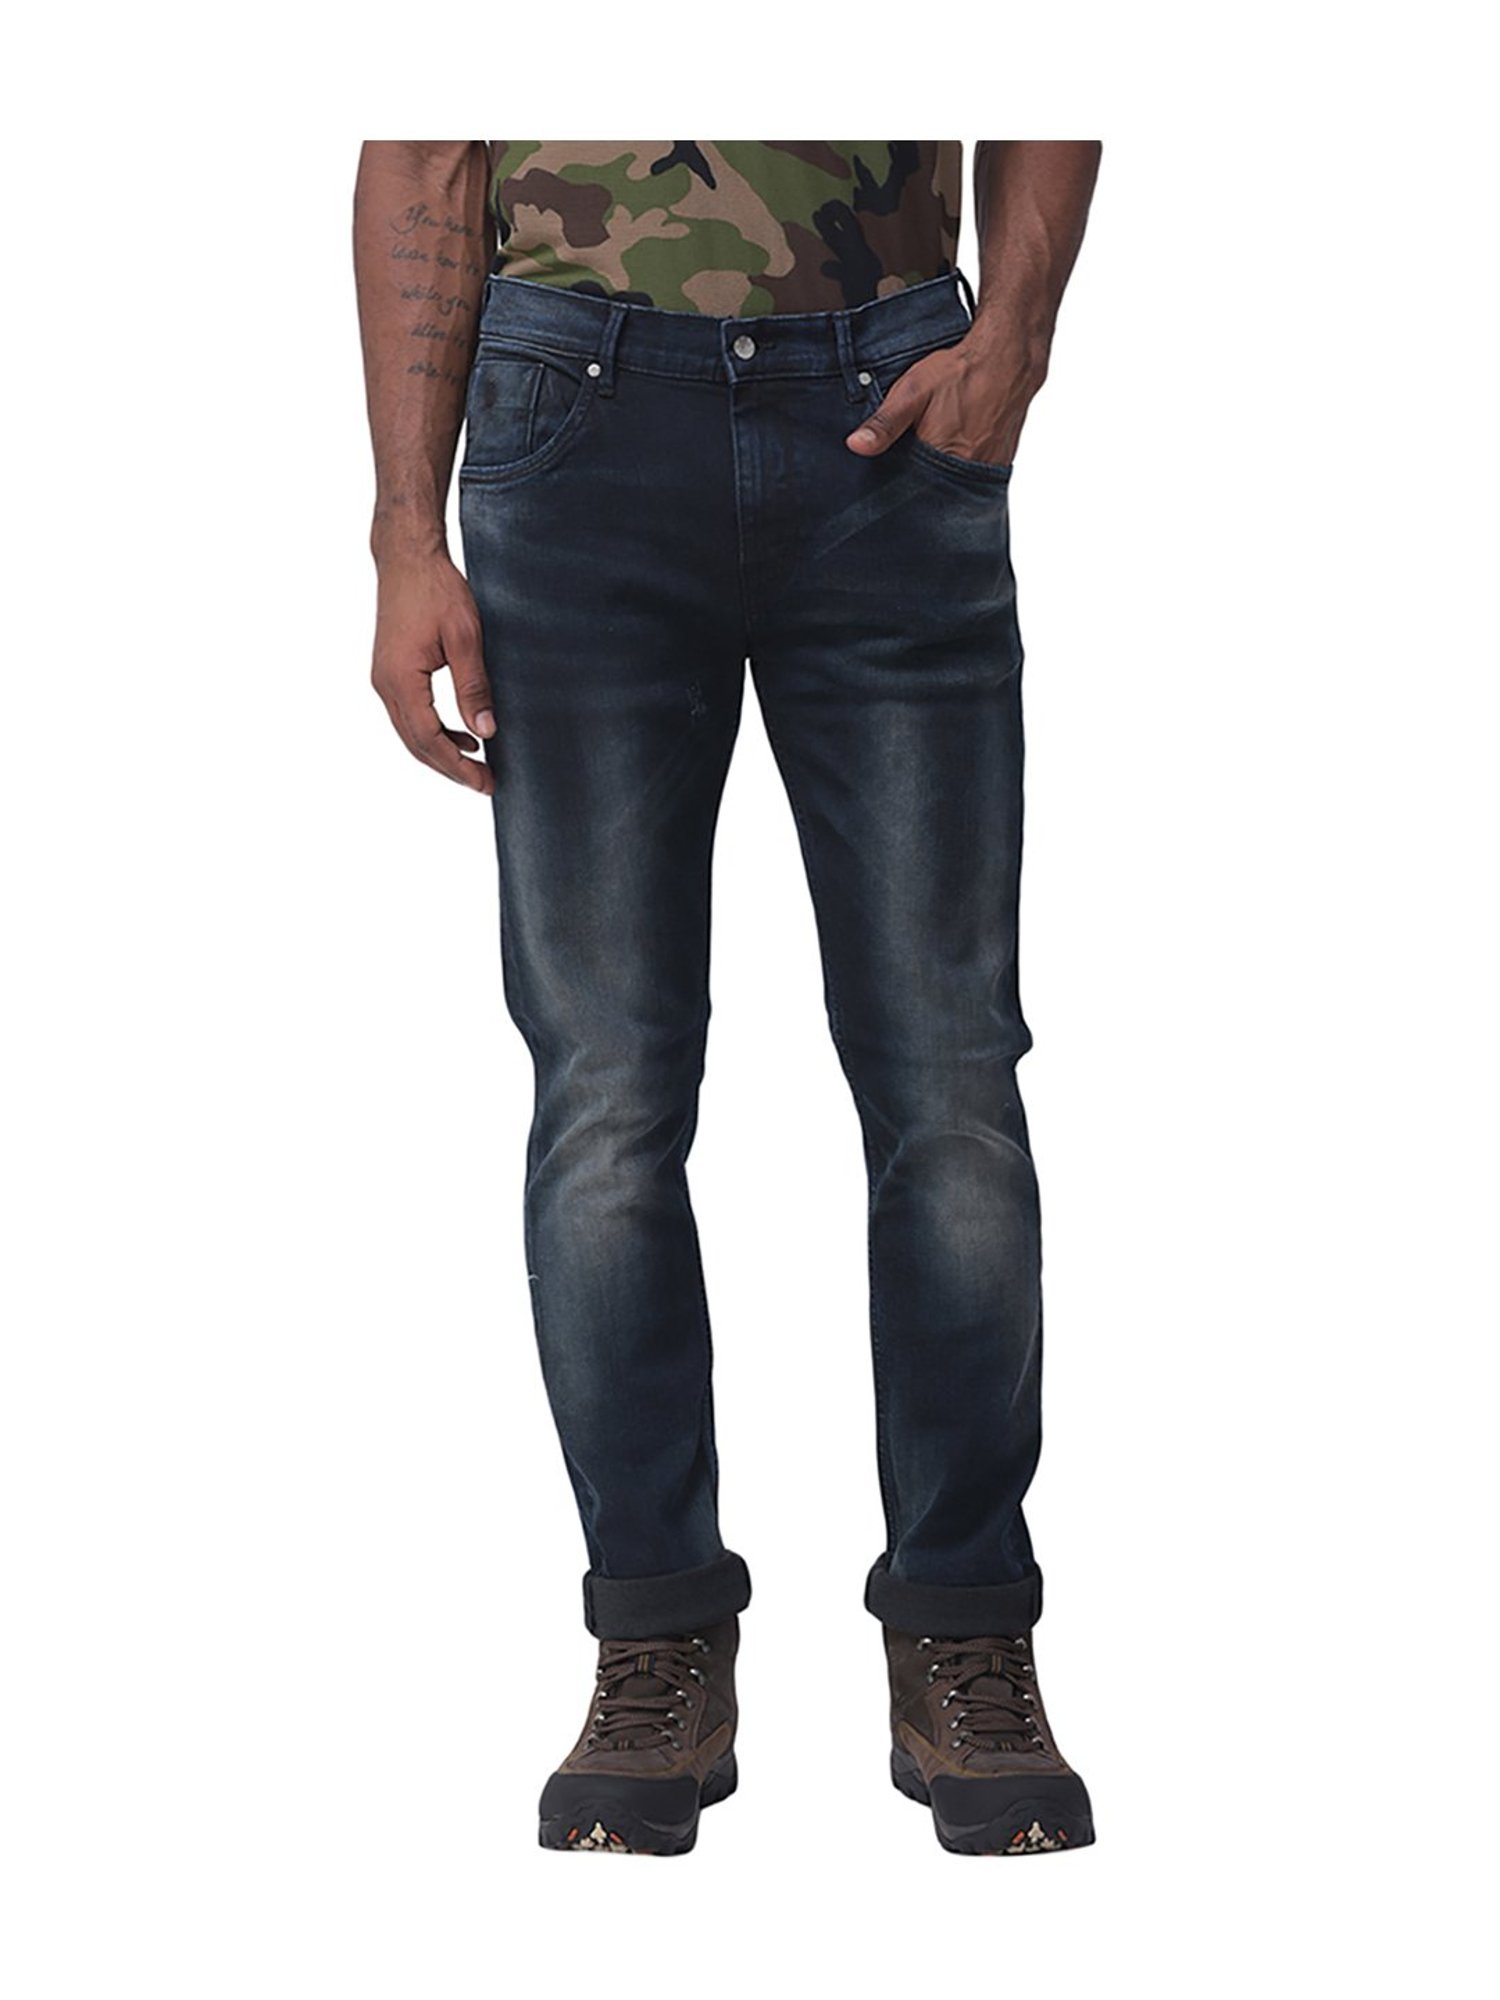 Buy Woodland Ink Blue Regular Fit Jeans for Men Online  Tata CLiQ